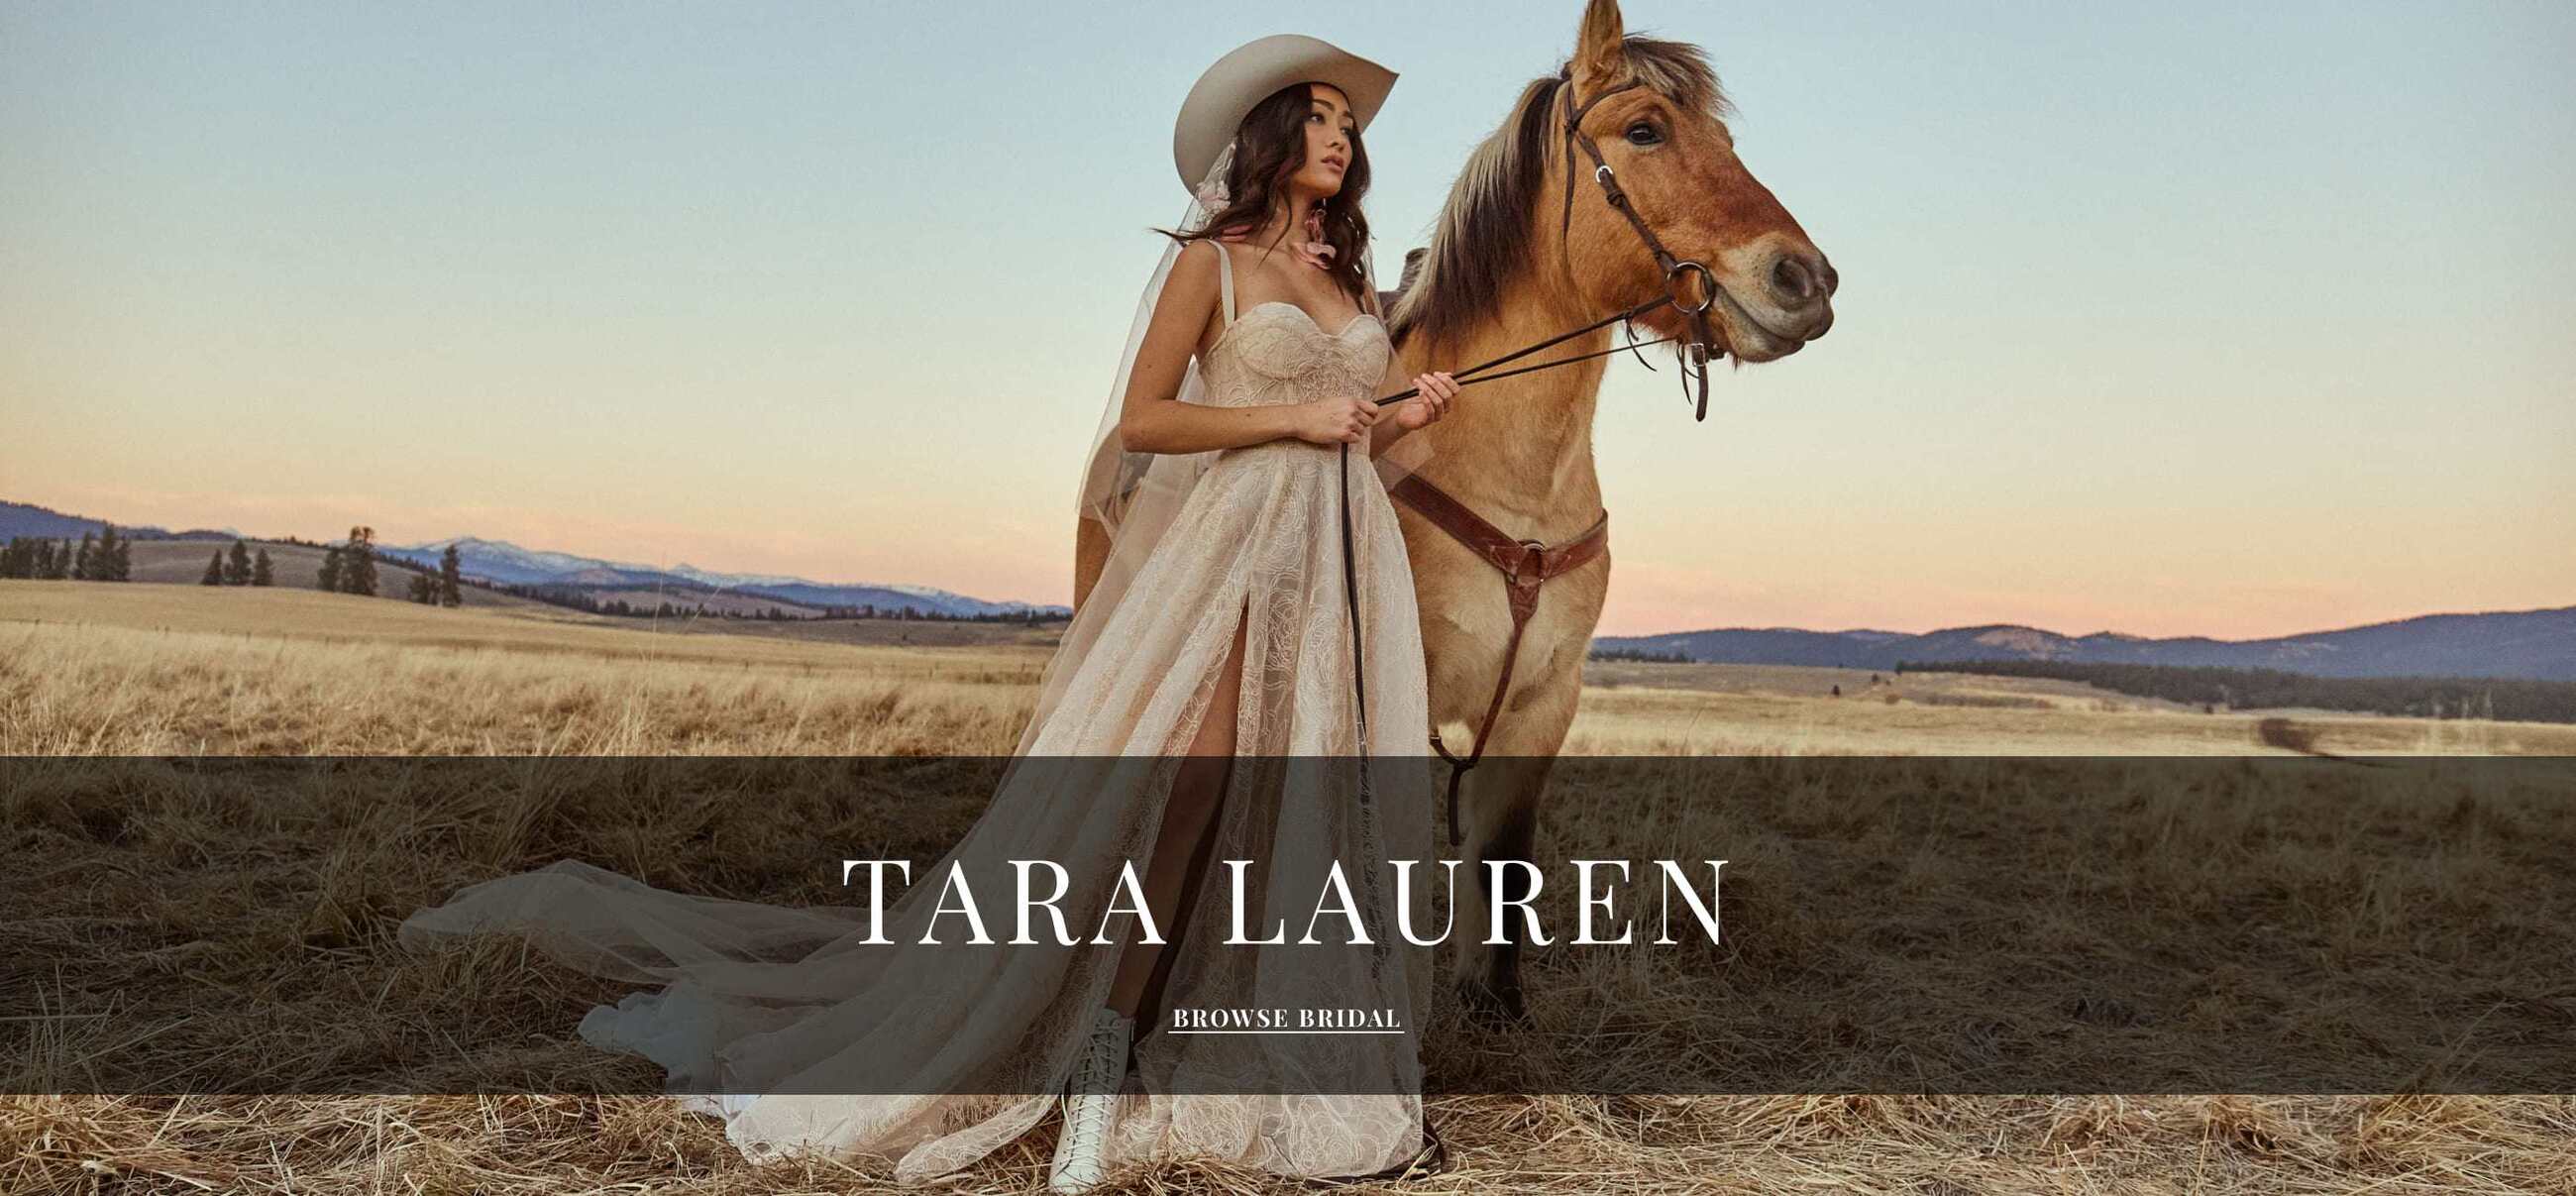 Tara Lauren Desktop for Bridal